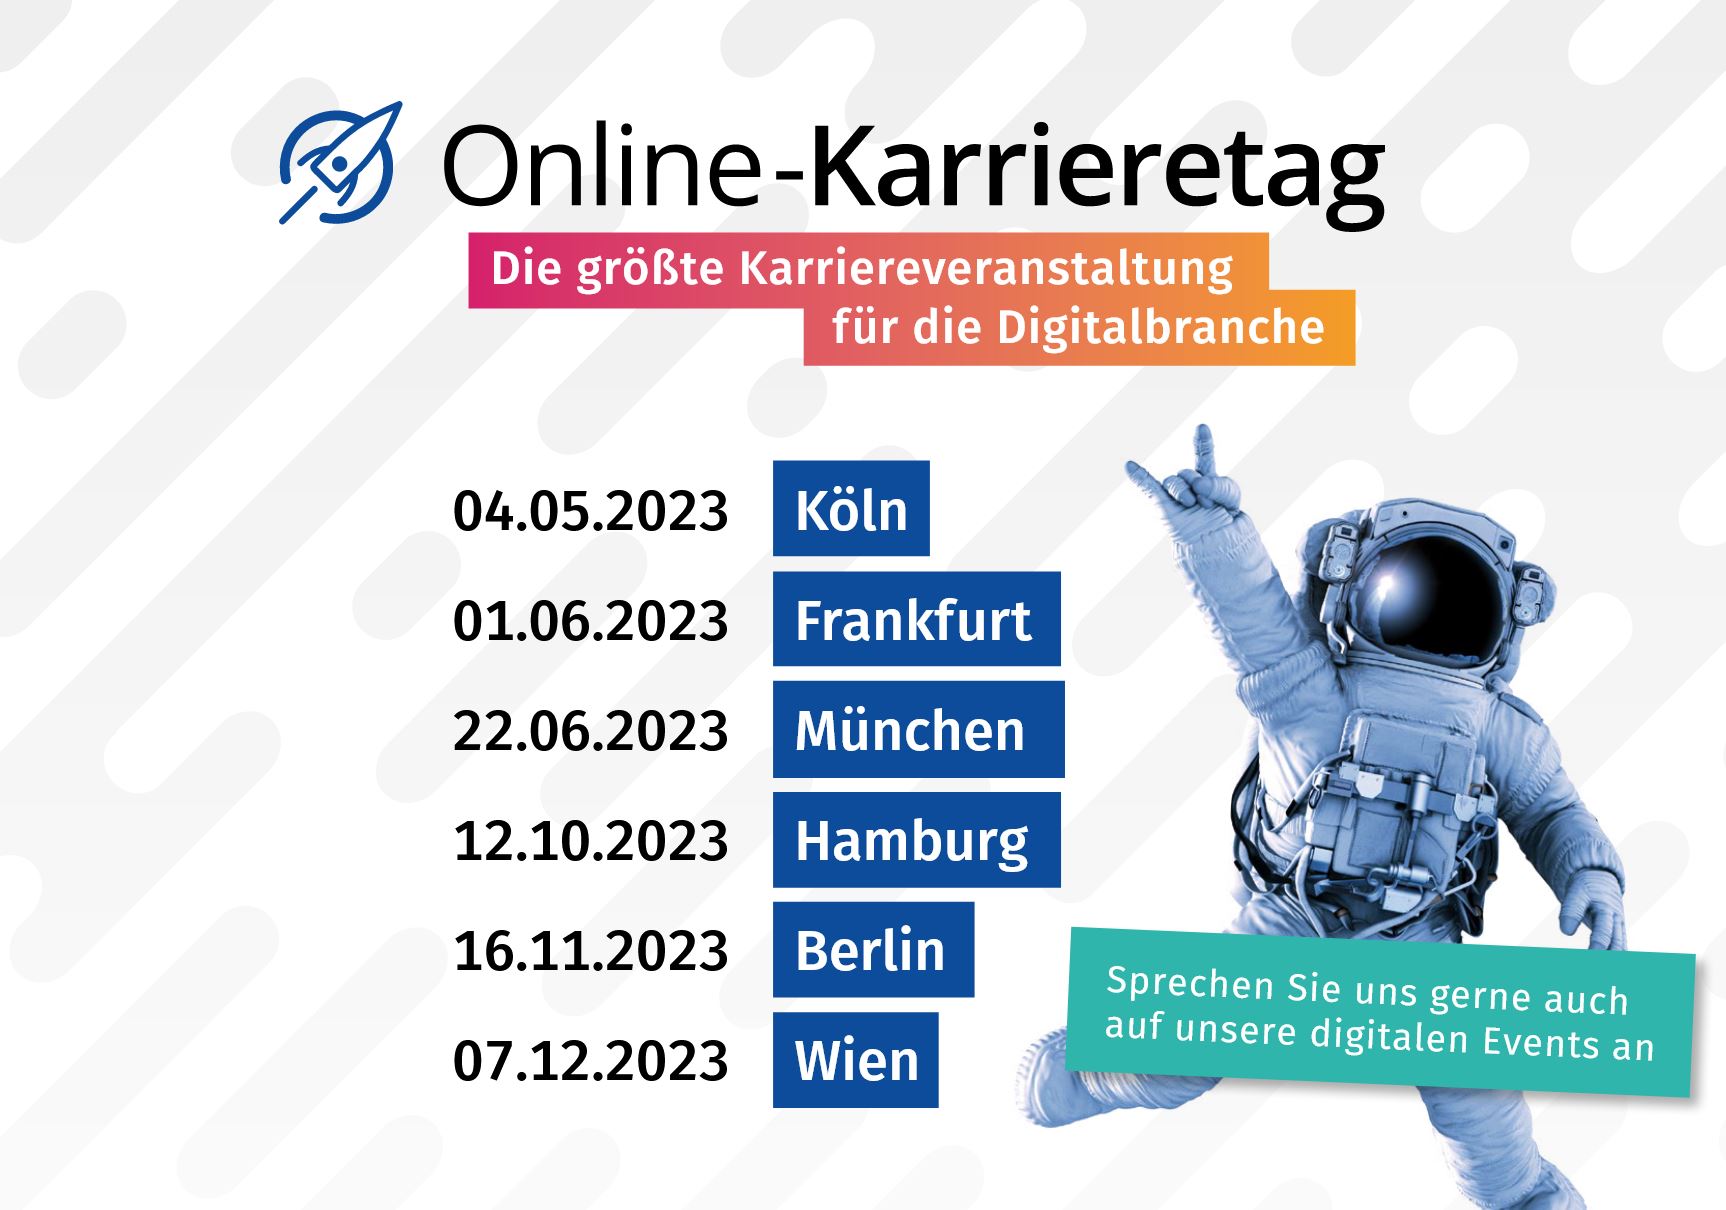 Online-Karrieretag in Hamburg